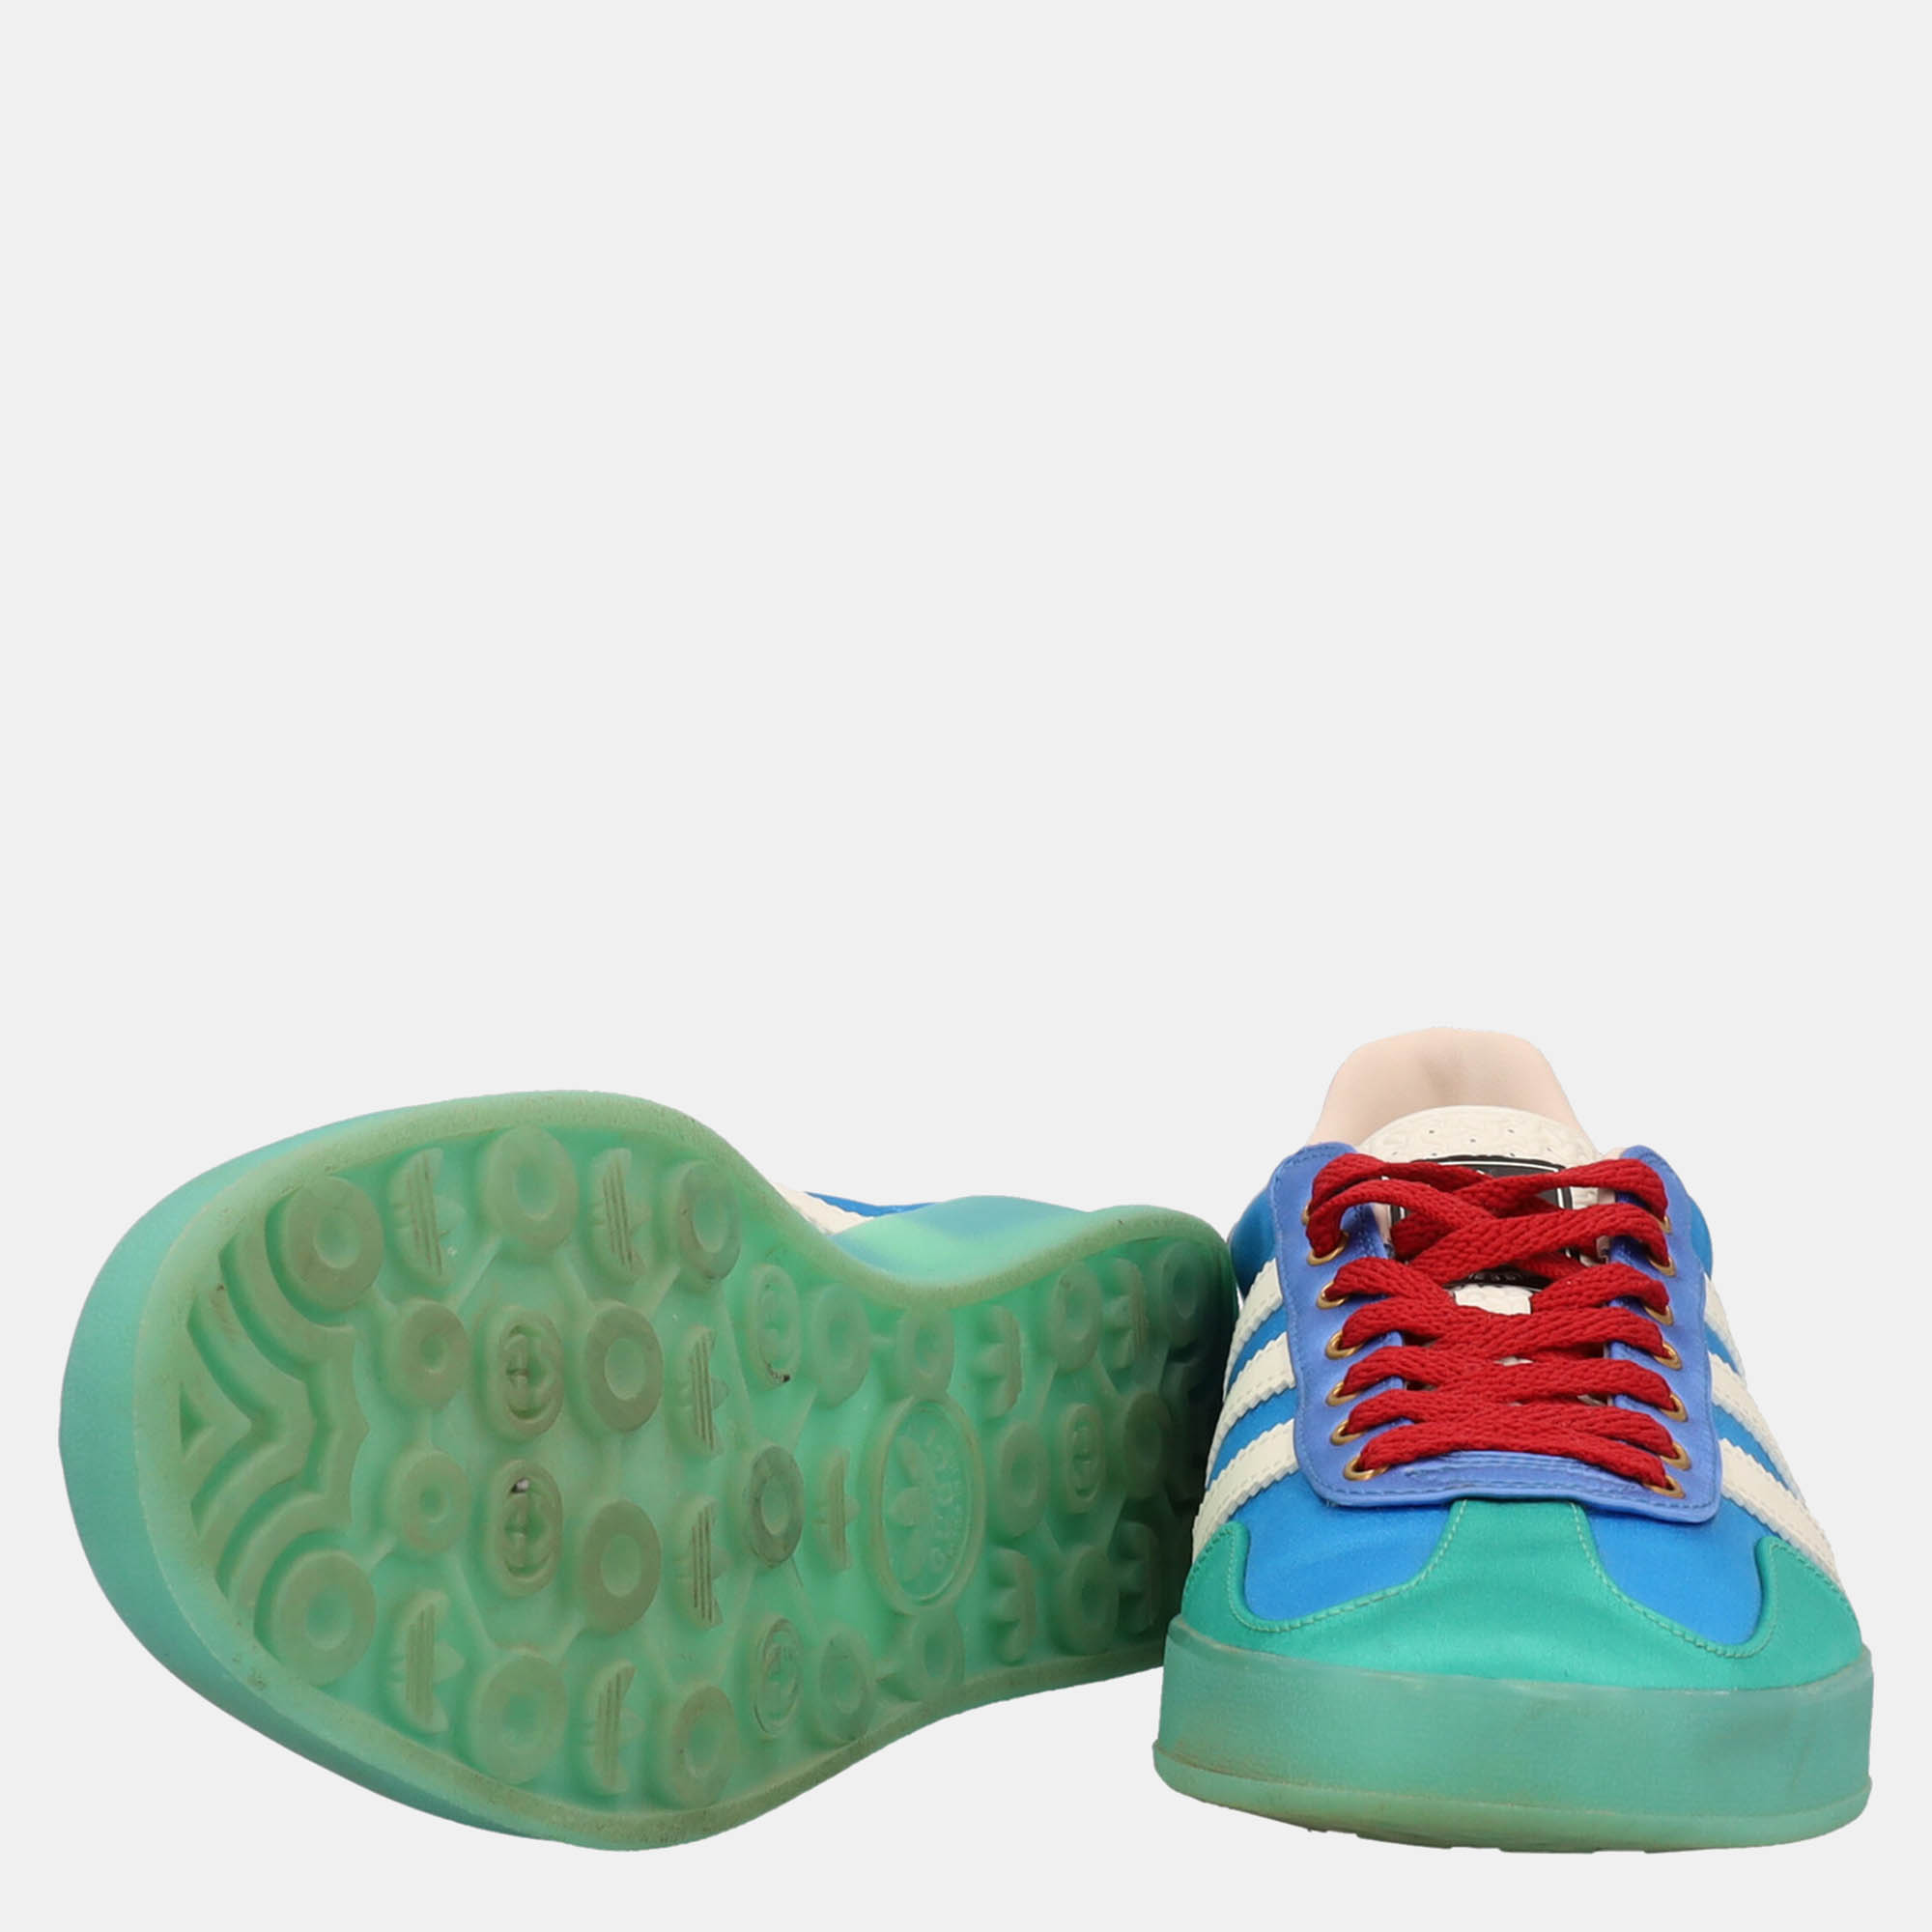 Gucci  Women's Fabric Sneakers - Green - EU 39